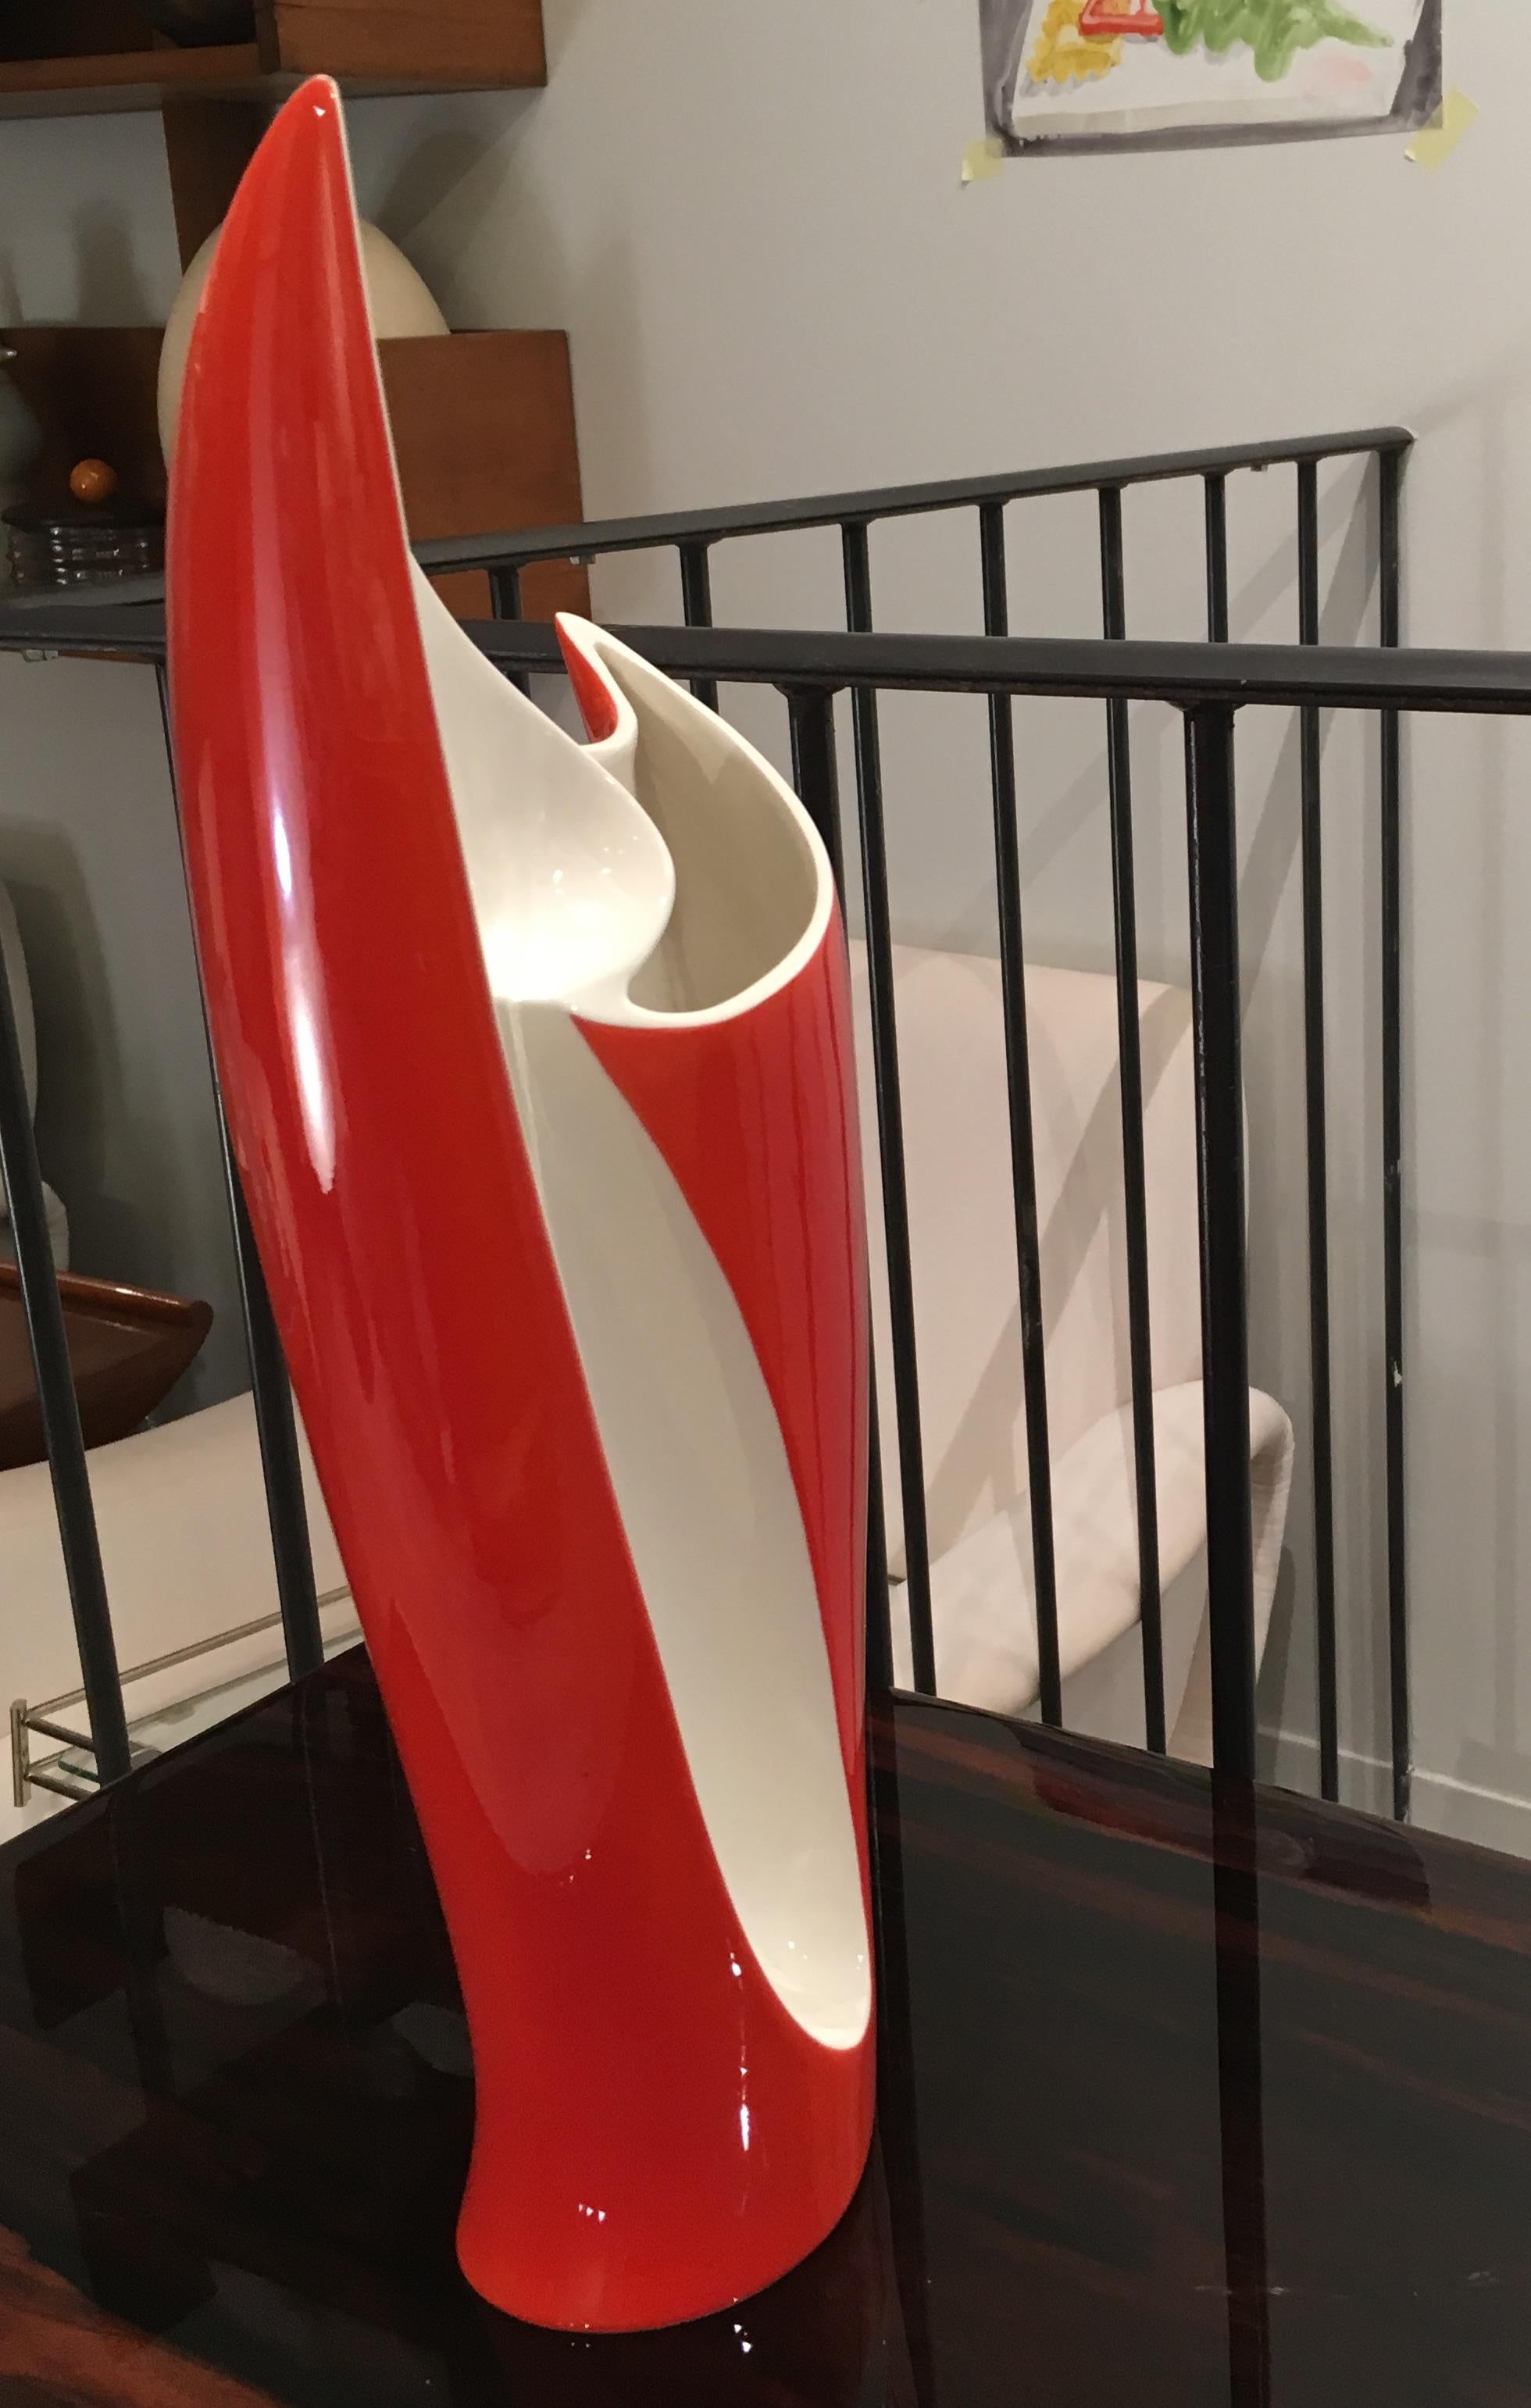 Vase en céramique rouge et blanc avec un dessin géométrique magnifiquement compliqué. C'est une pièce lumineuse qui se distingue par ses couleurs contrastées typiques du design midcentury.